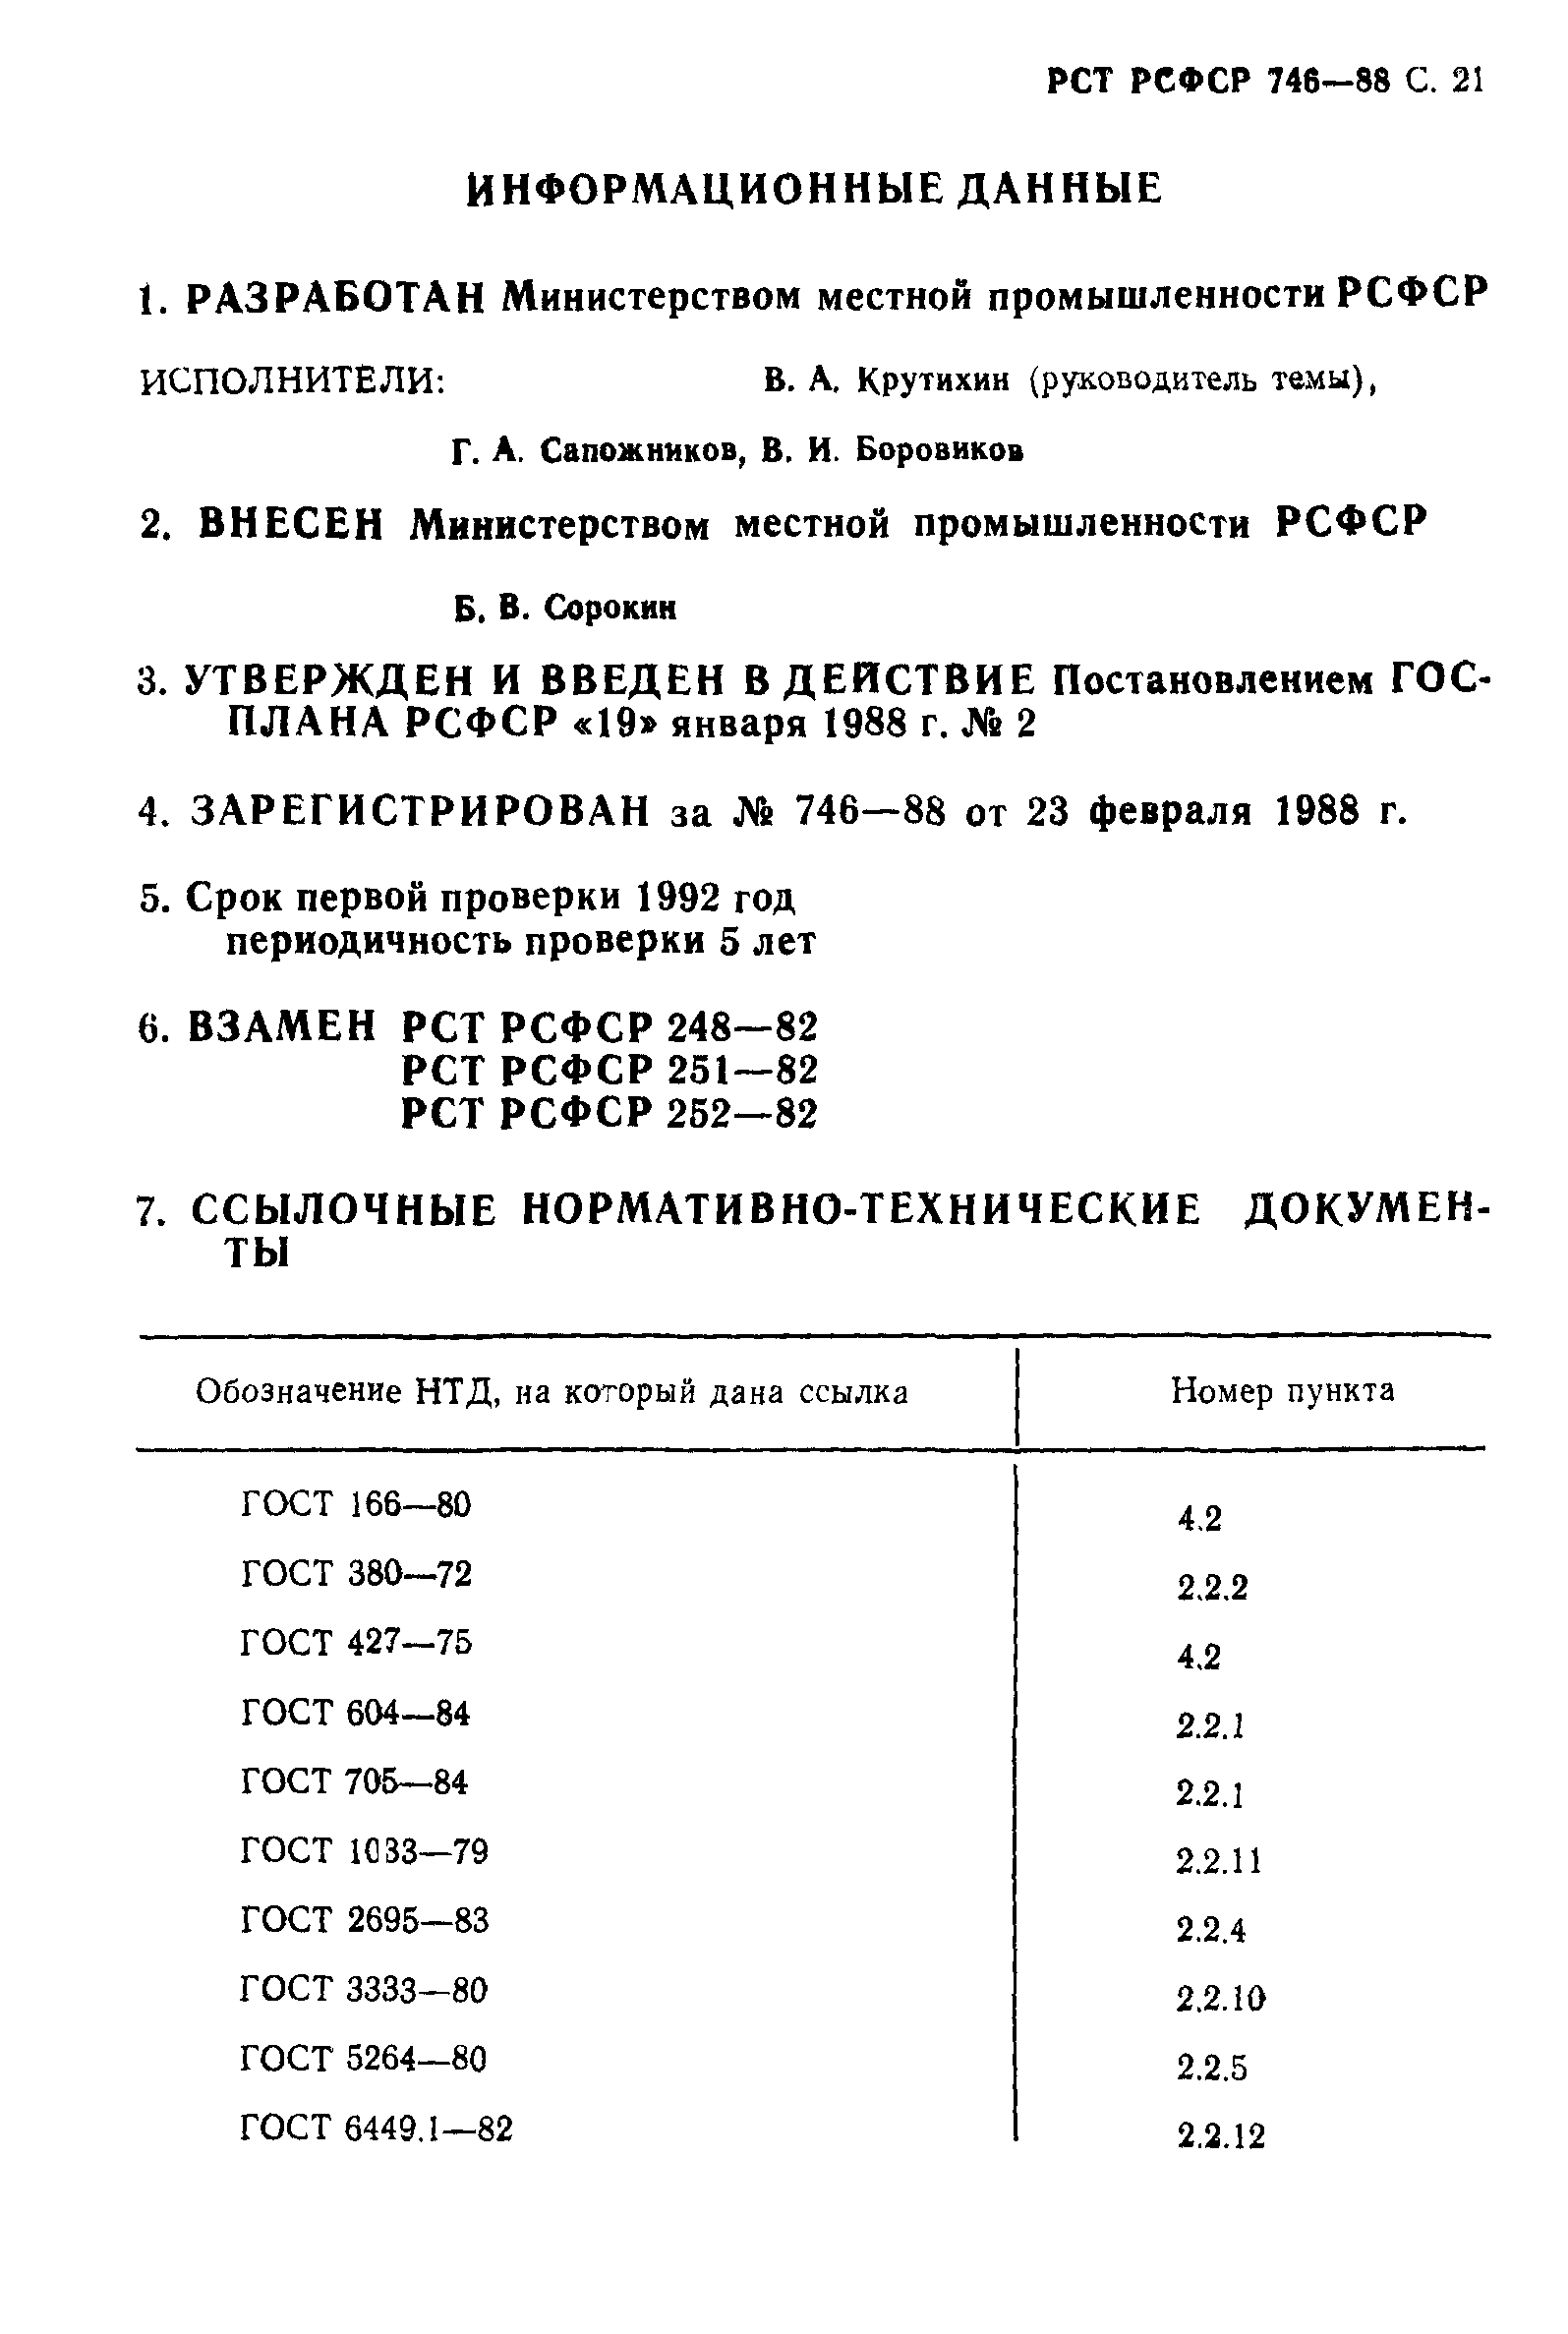 РСТ РСФСР 746-88